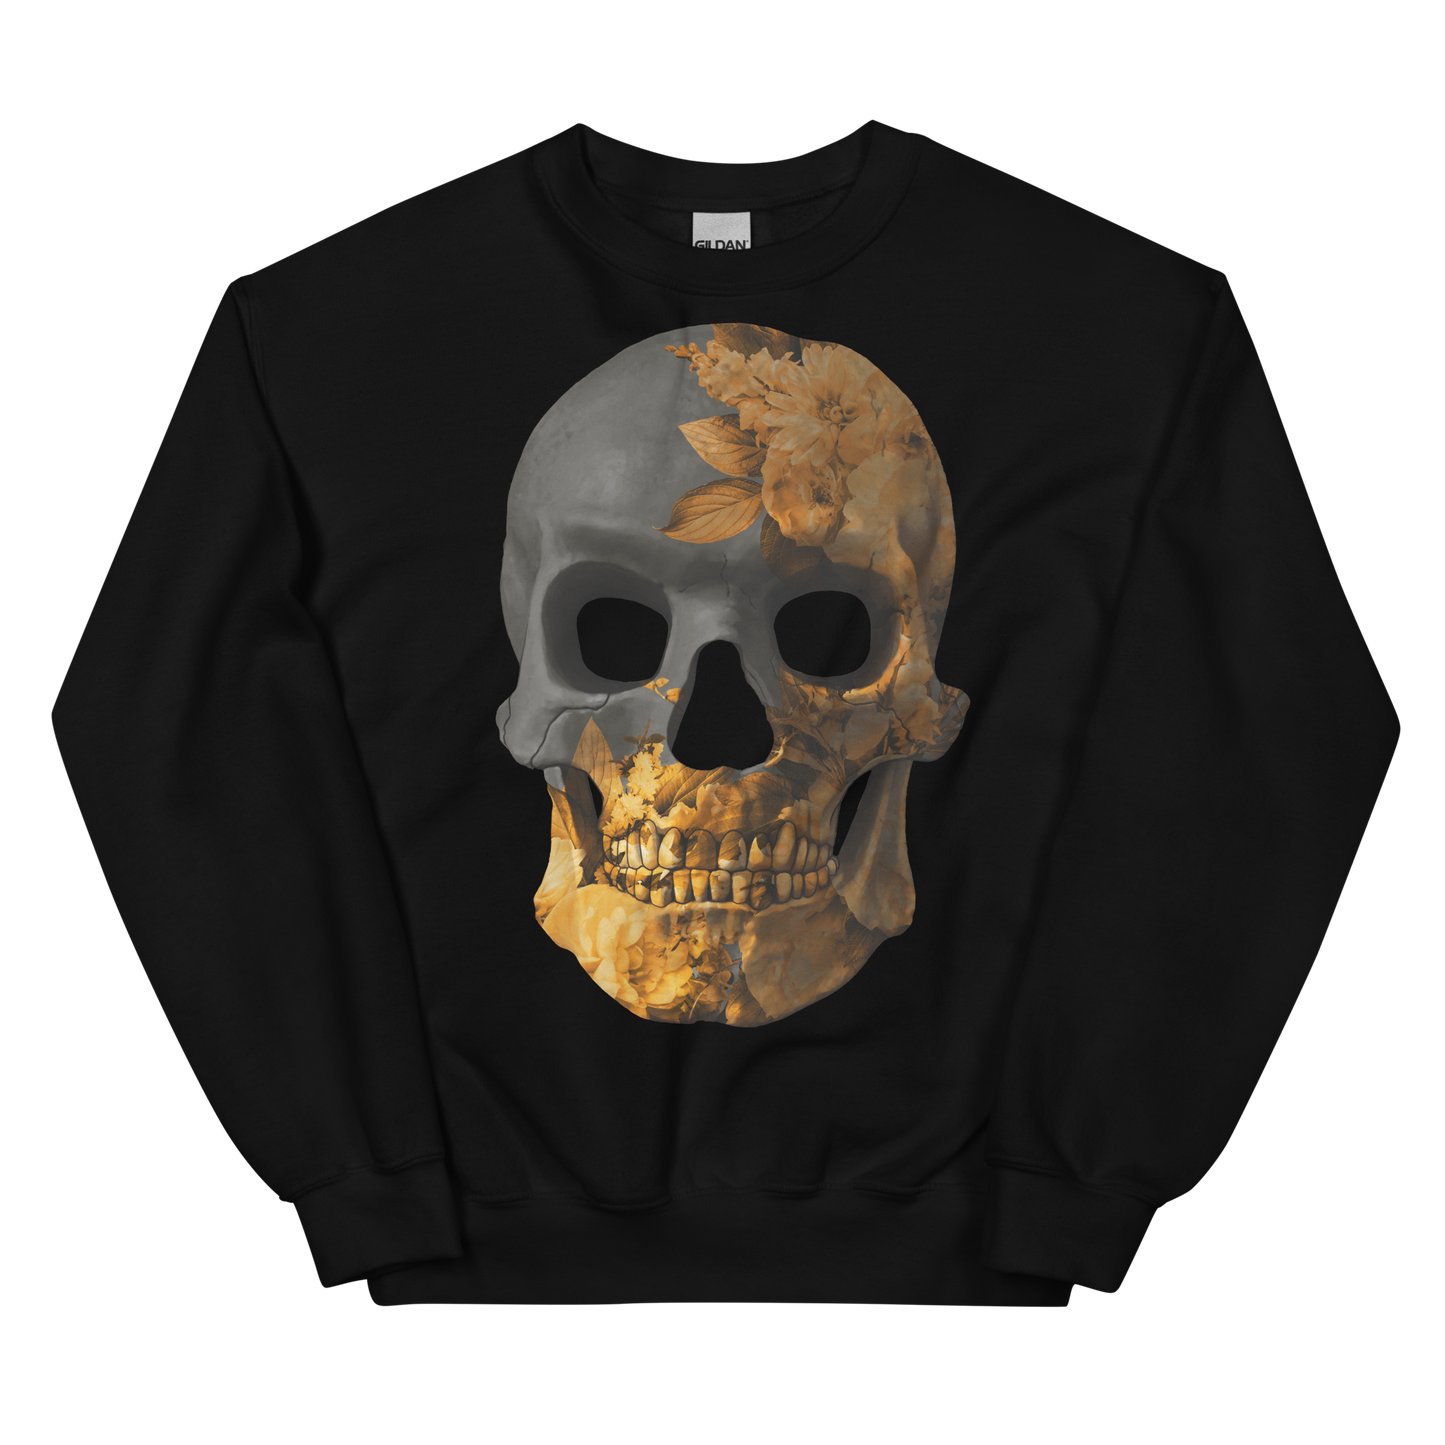 The Flower Skull motorcycle Sweatshirt 041